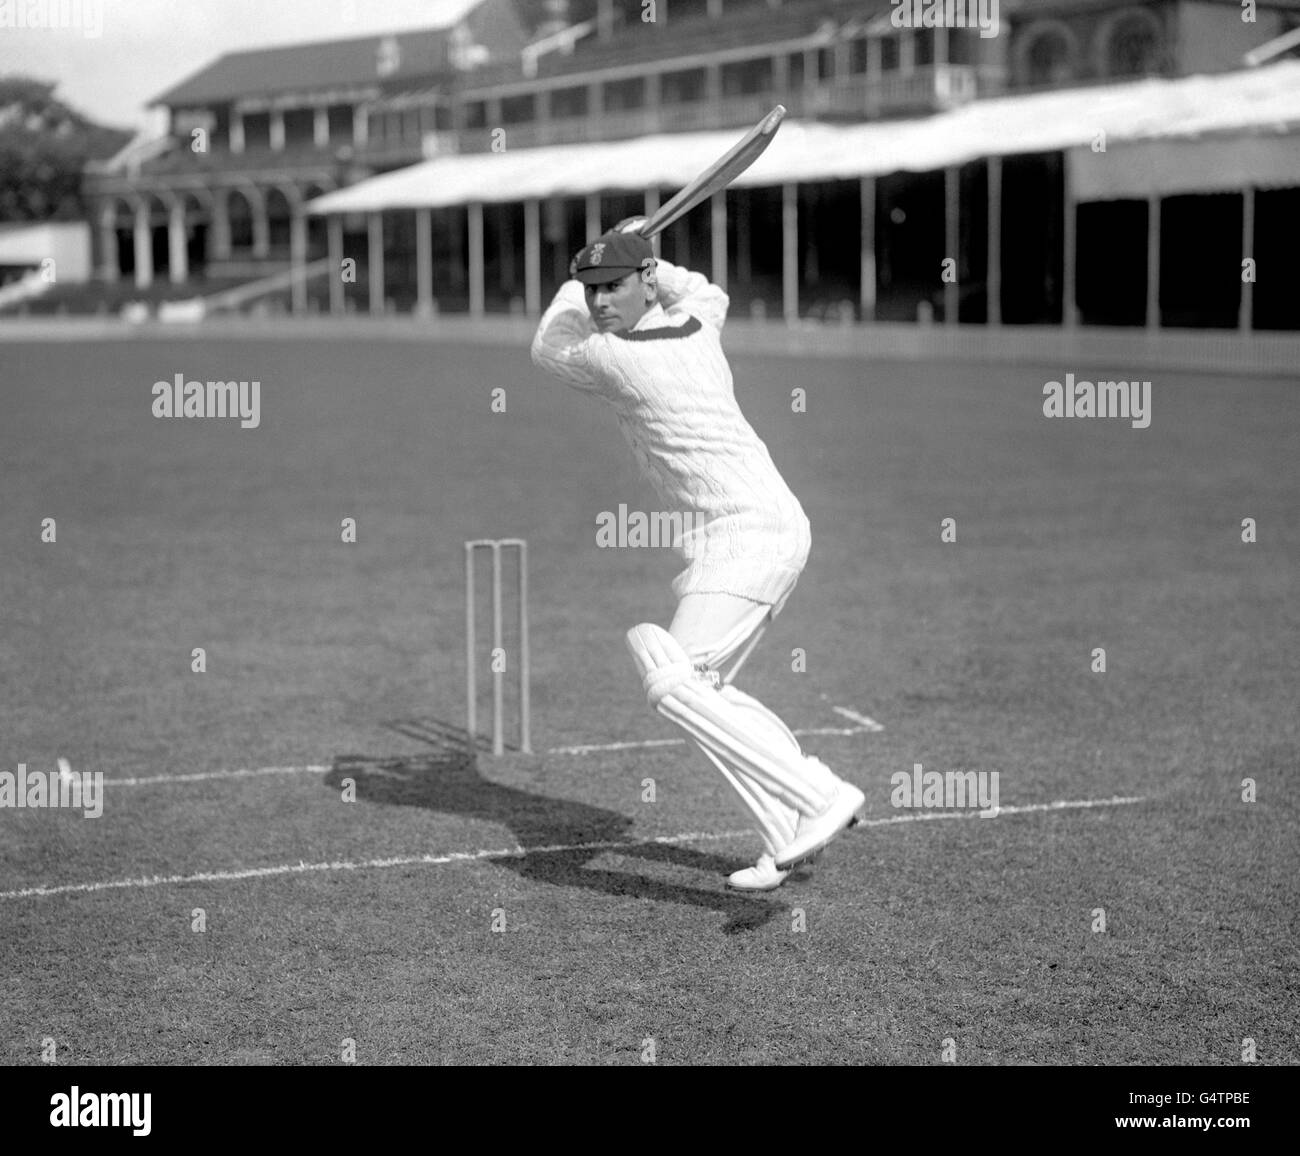 Cricket - Surrey County Cricket Club - Jack Hobbs - The Oval. Un'immagine posata di Surrey batsman Jack Hobbs batting. Foto Stock